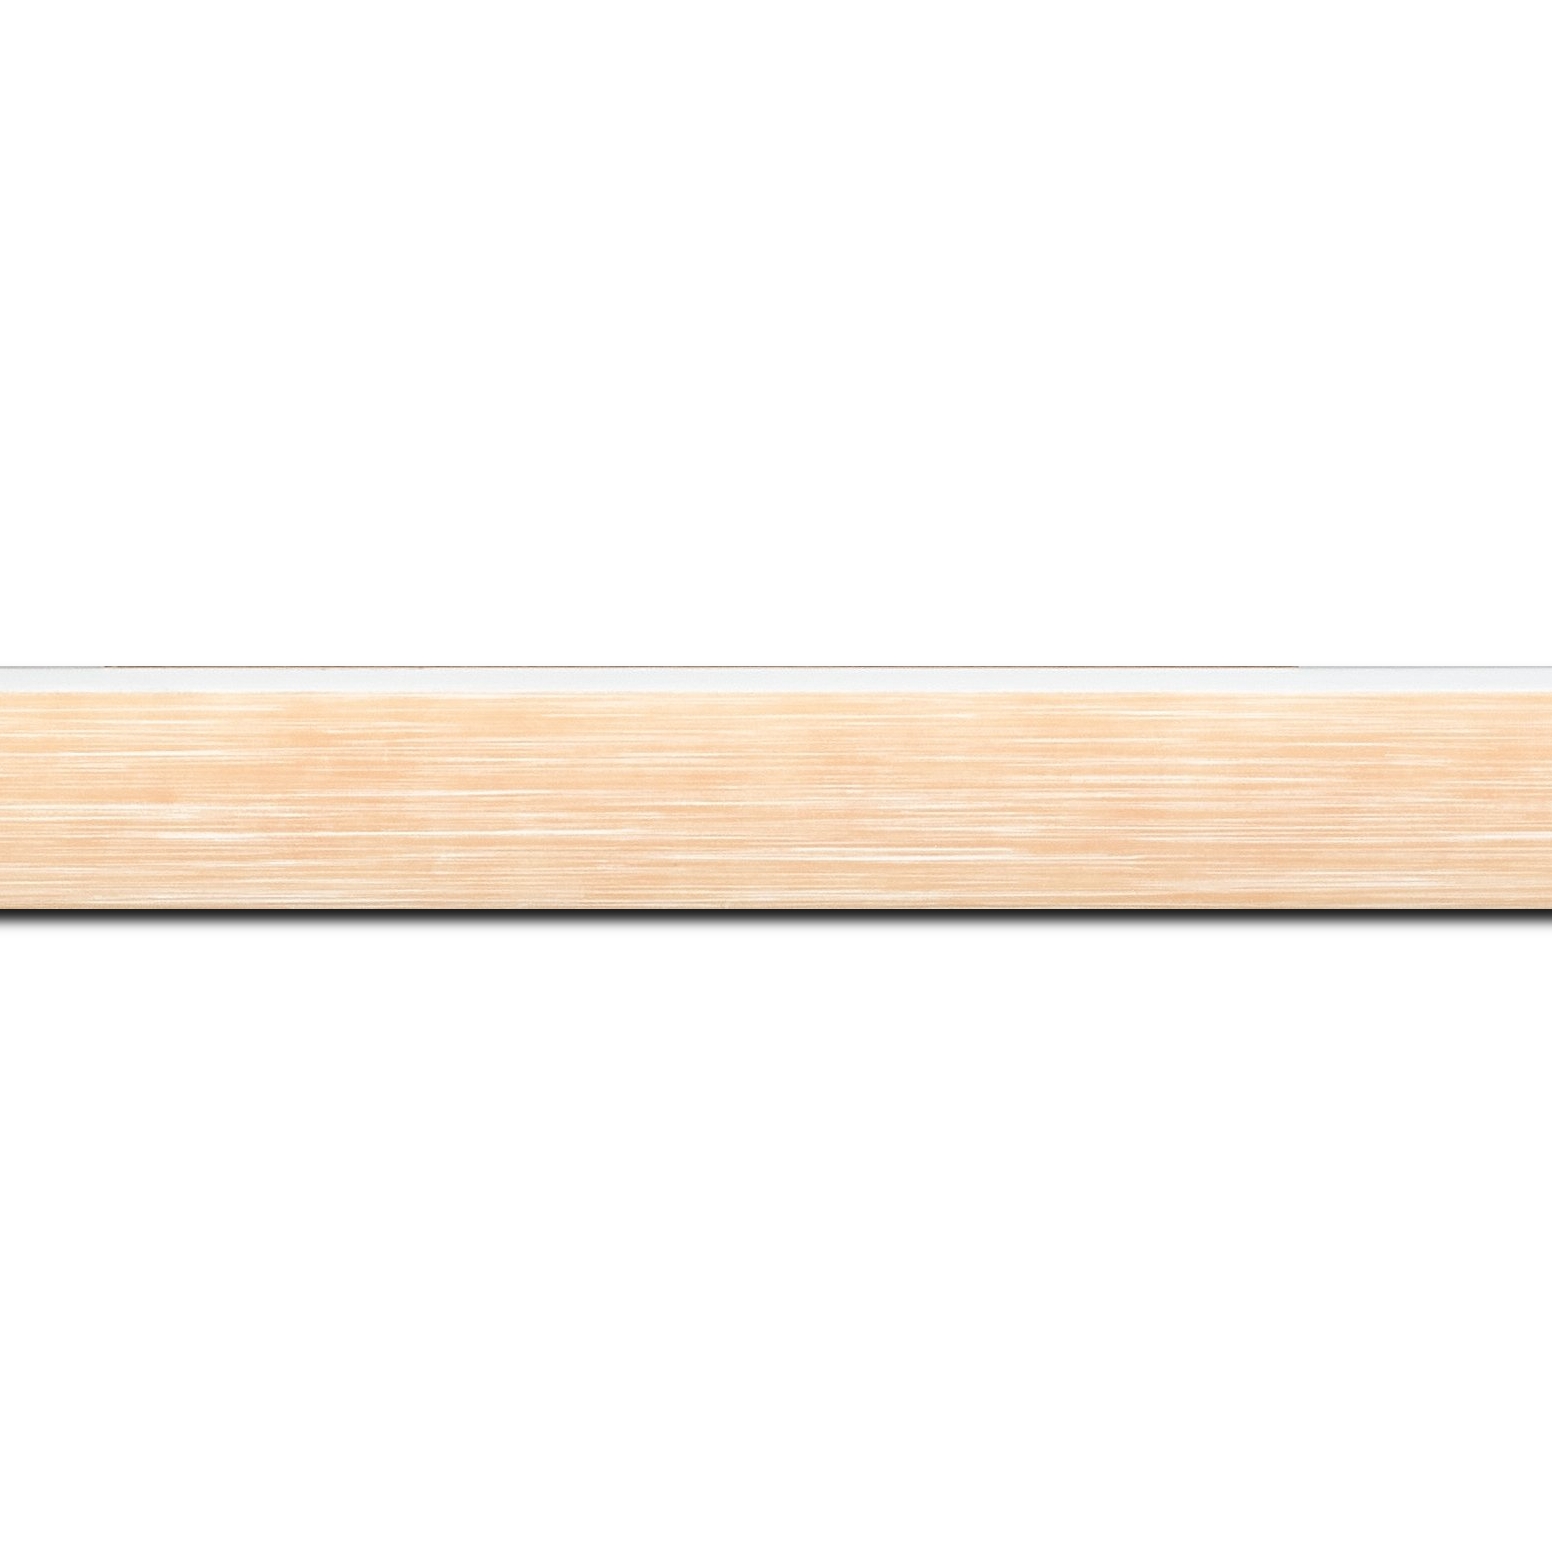 Baguette longueur 1.40m bois profil arrondi en pente plongeant largeur 2.4cm couleur orange saumon tendre, arête et chant extérieur du cadre blanc